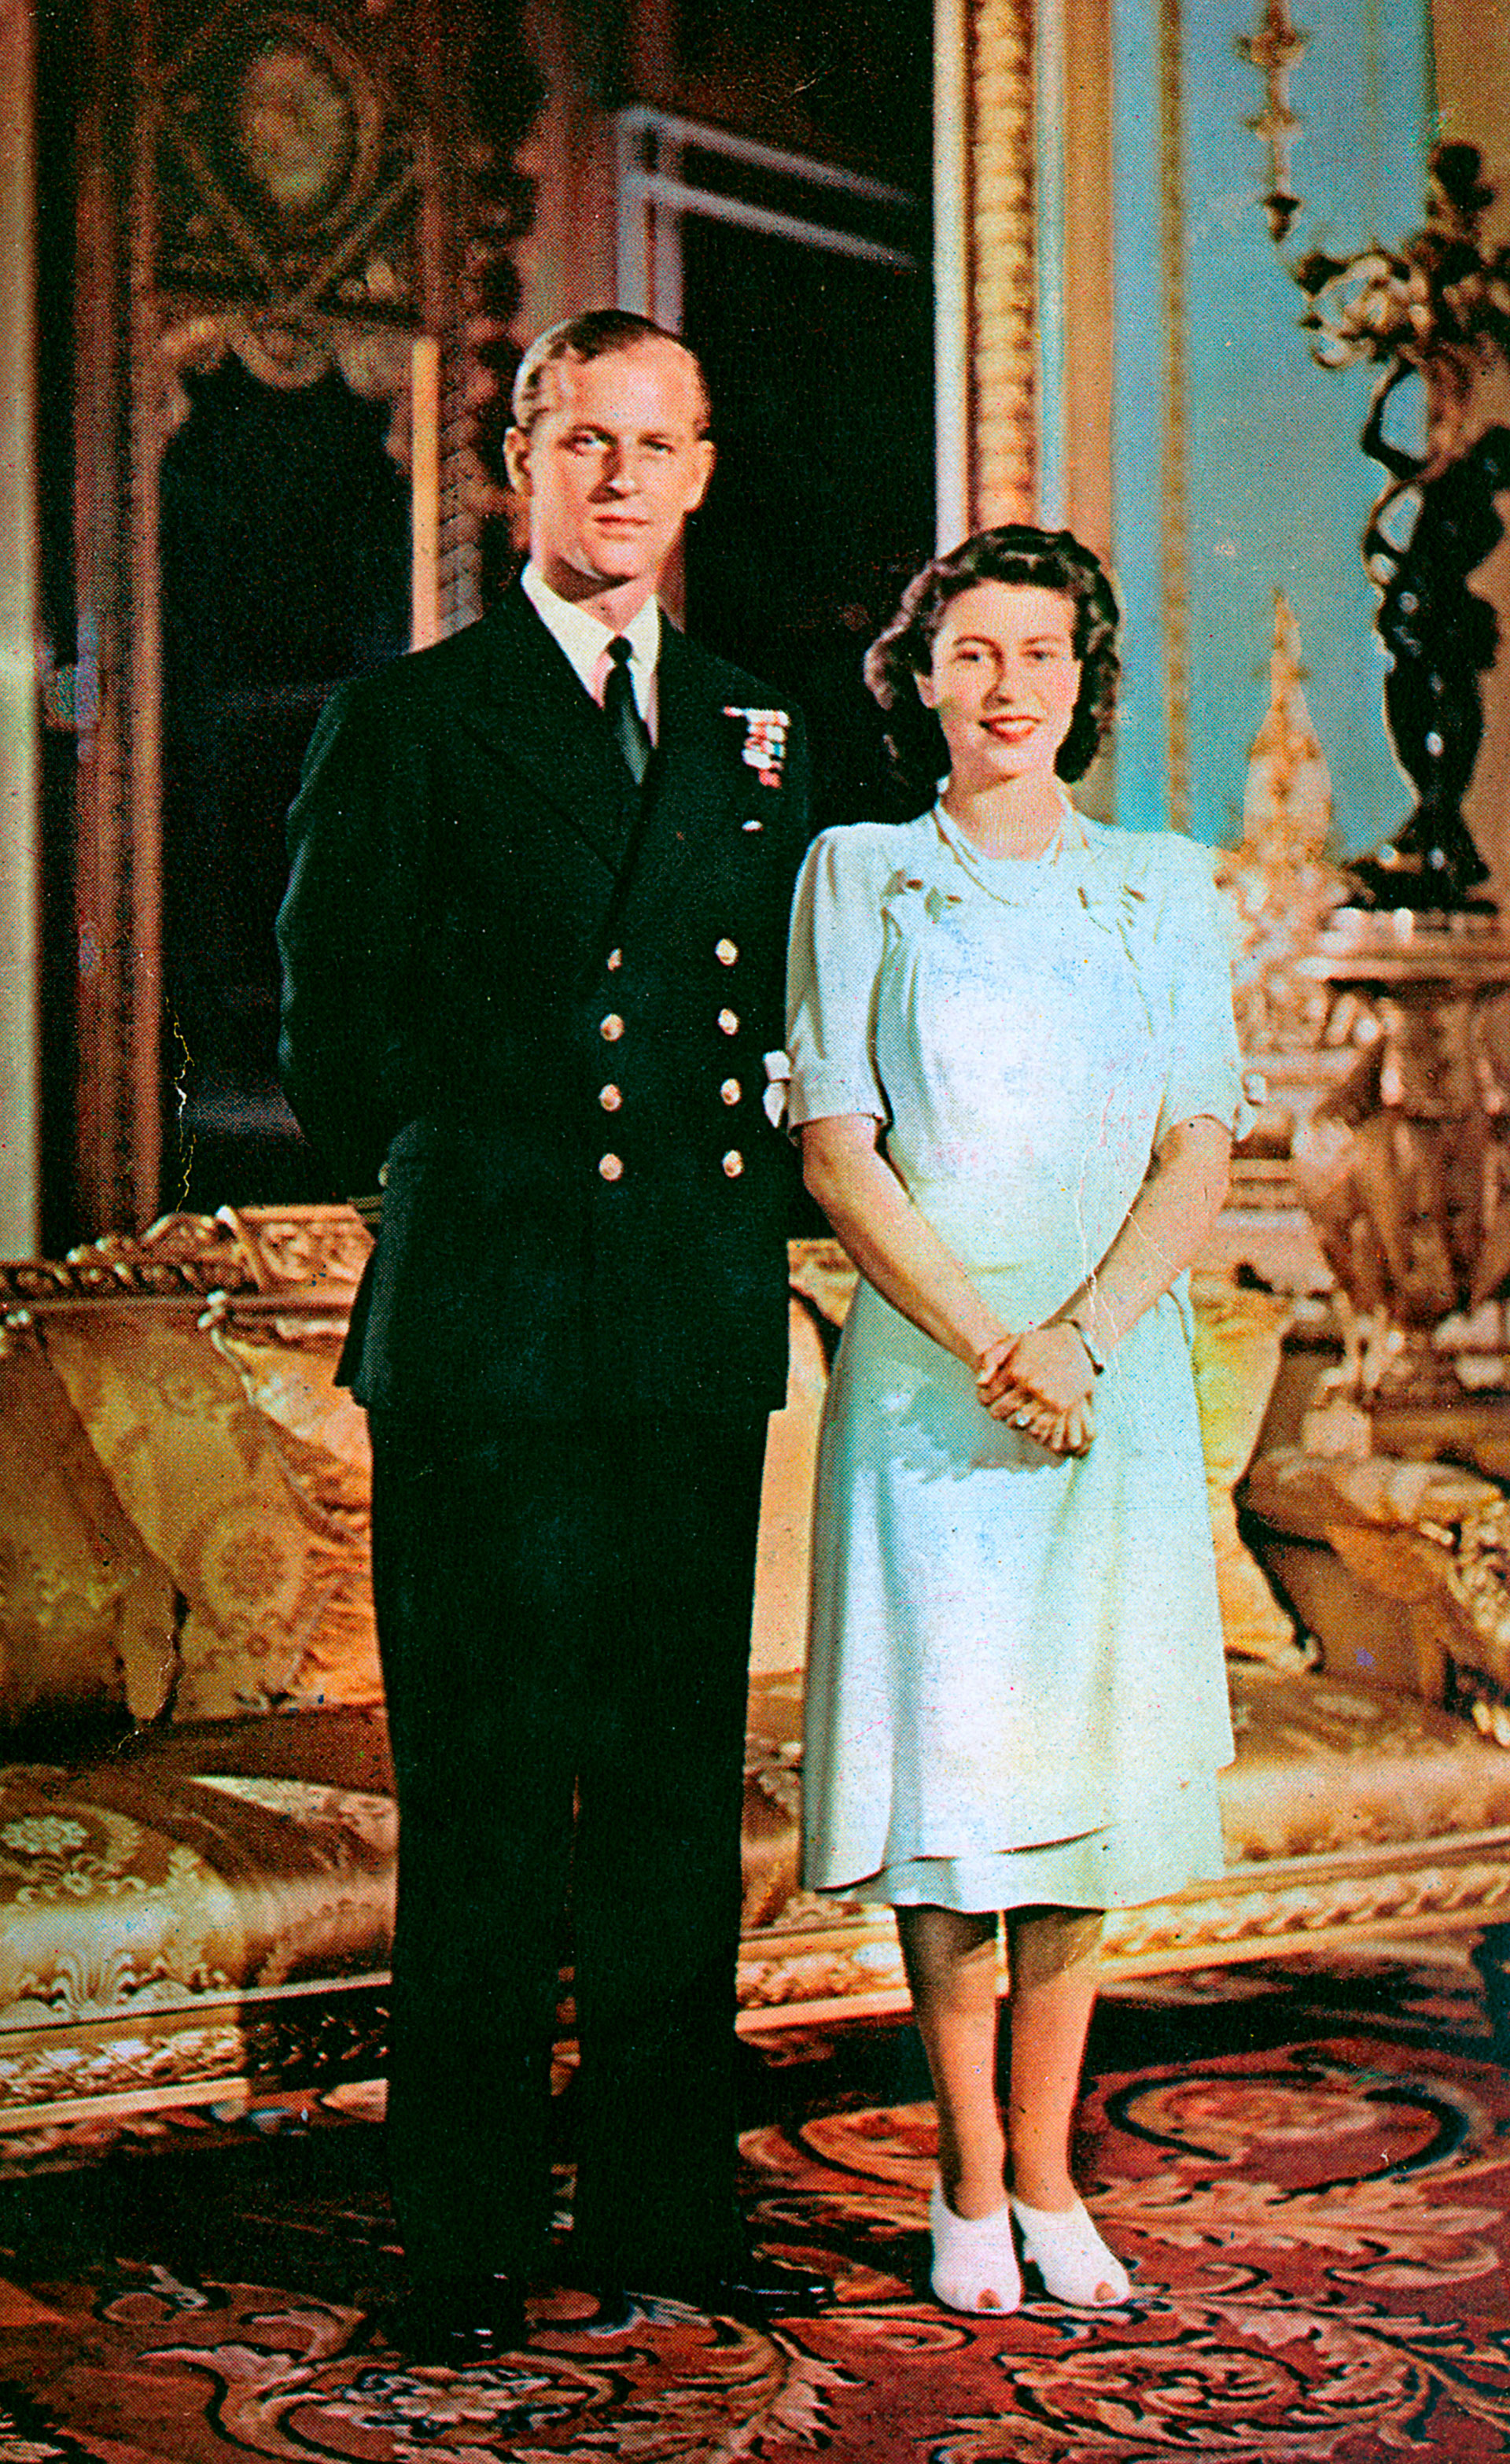 Una de las fotografías del compromiso oficial tomadas para conmemorar el anuncio del compromiso de la princesa Isabel con Felipe Mountbatten el 9 de julio de 1947 en el Palacio de Buckingham 